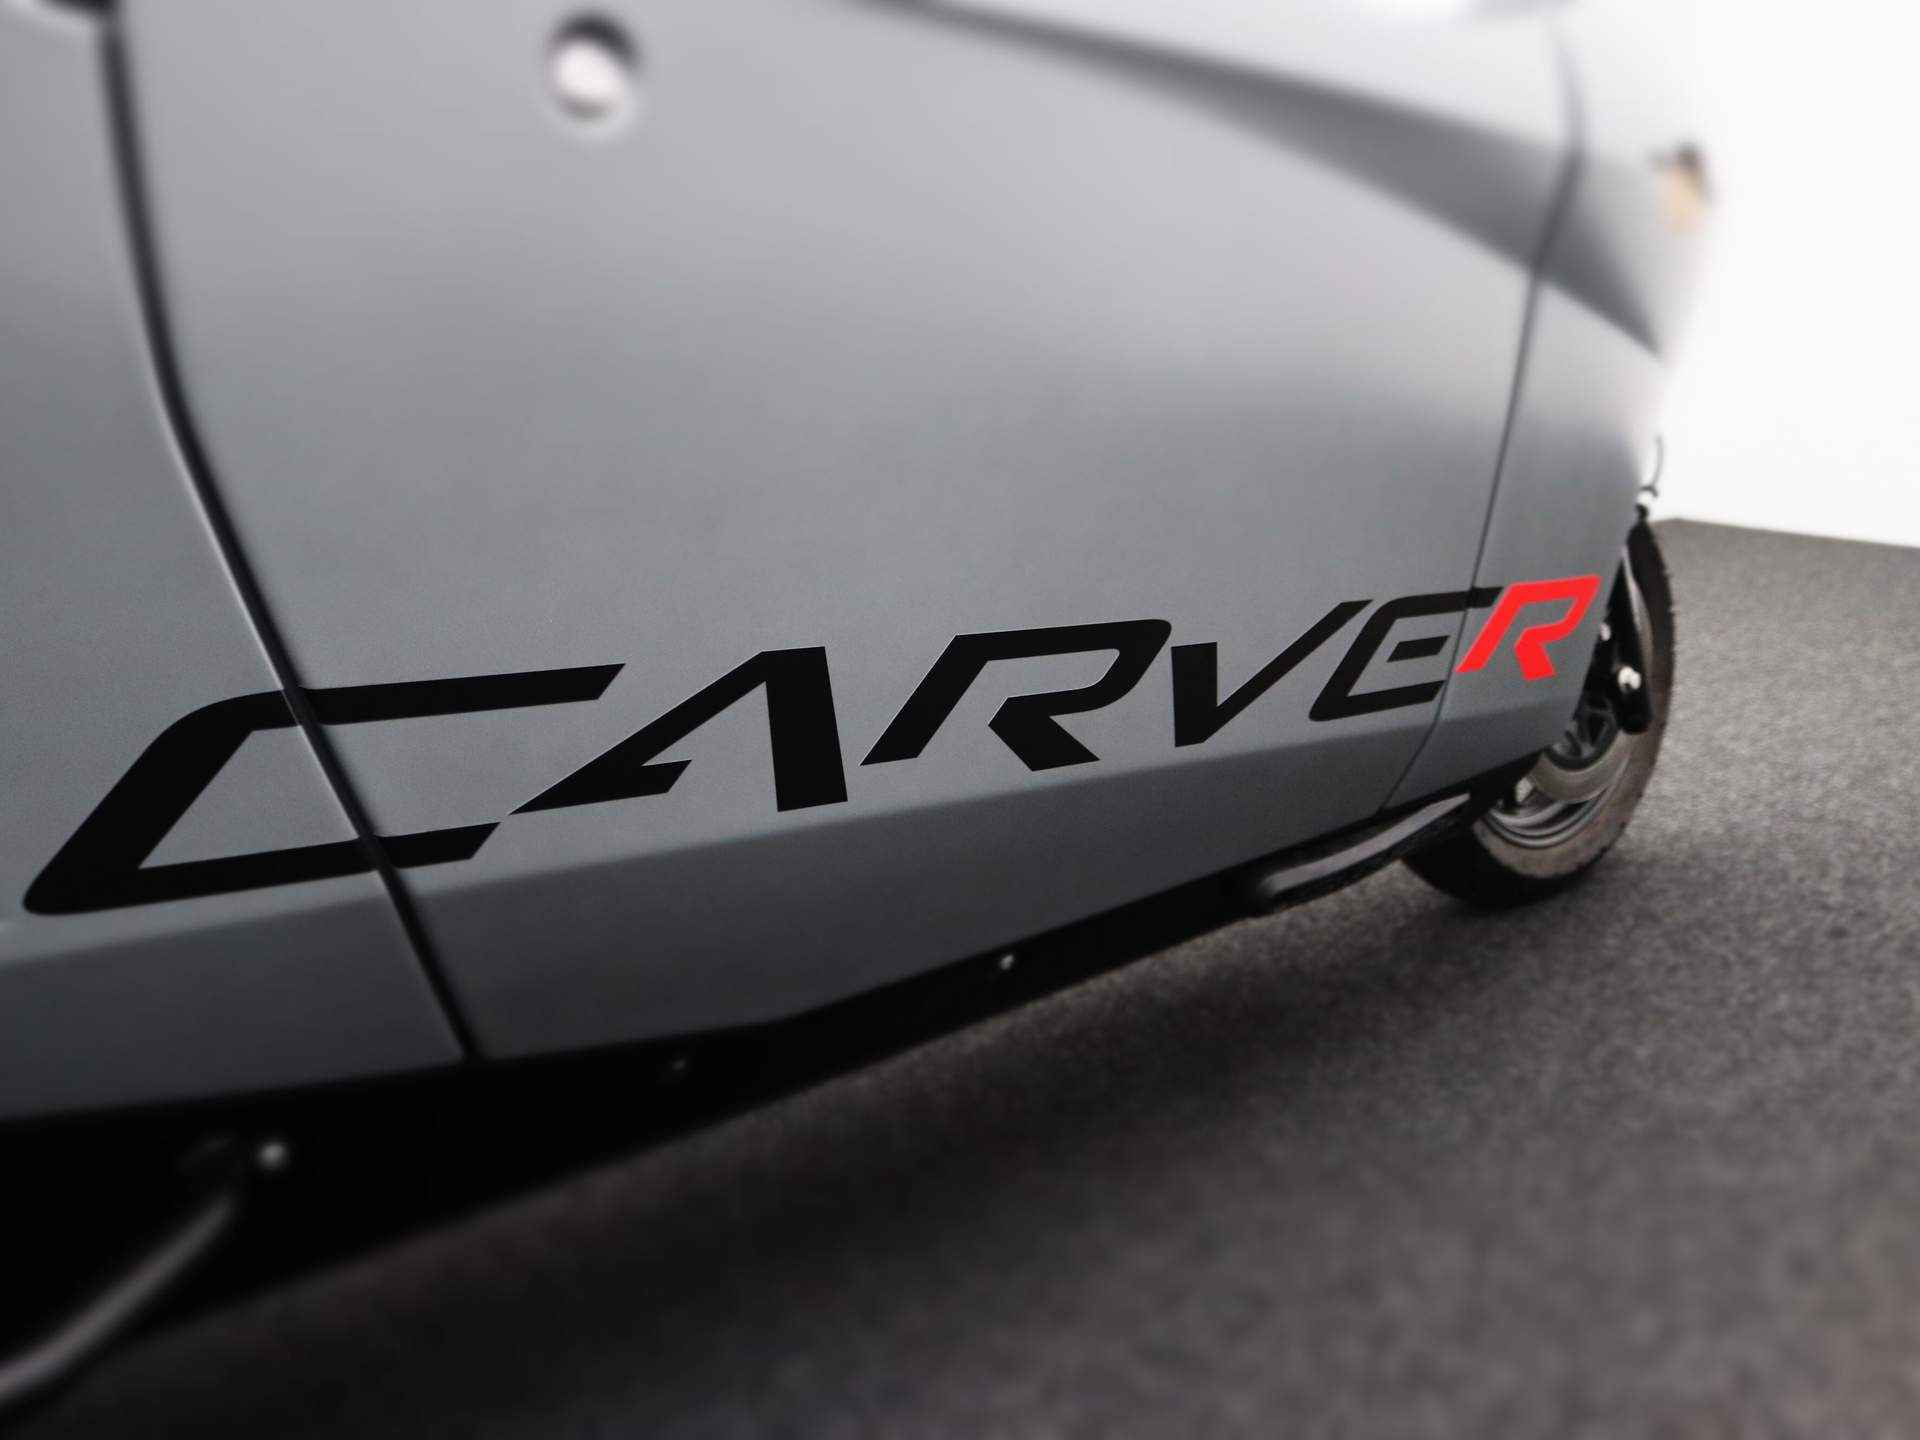 Carver R+ Brommobiel | Voorruit verwarming | Bluetooth Audio | Cabrio dak | Dynamic Driving Modes | Telefoonhouder | USB | Geen wegenbelasting | 130KM Actieradius | Binnen 3 uur opgeladen! - 25/27